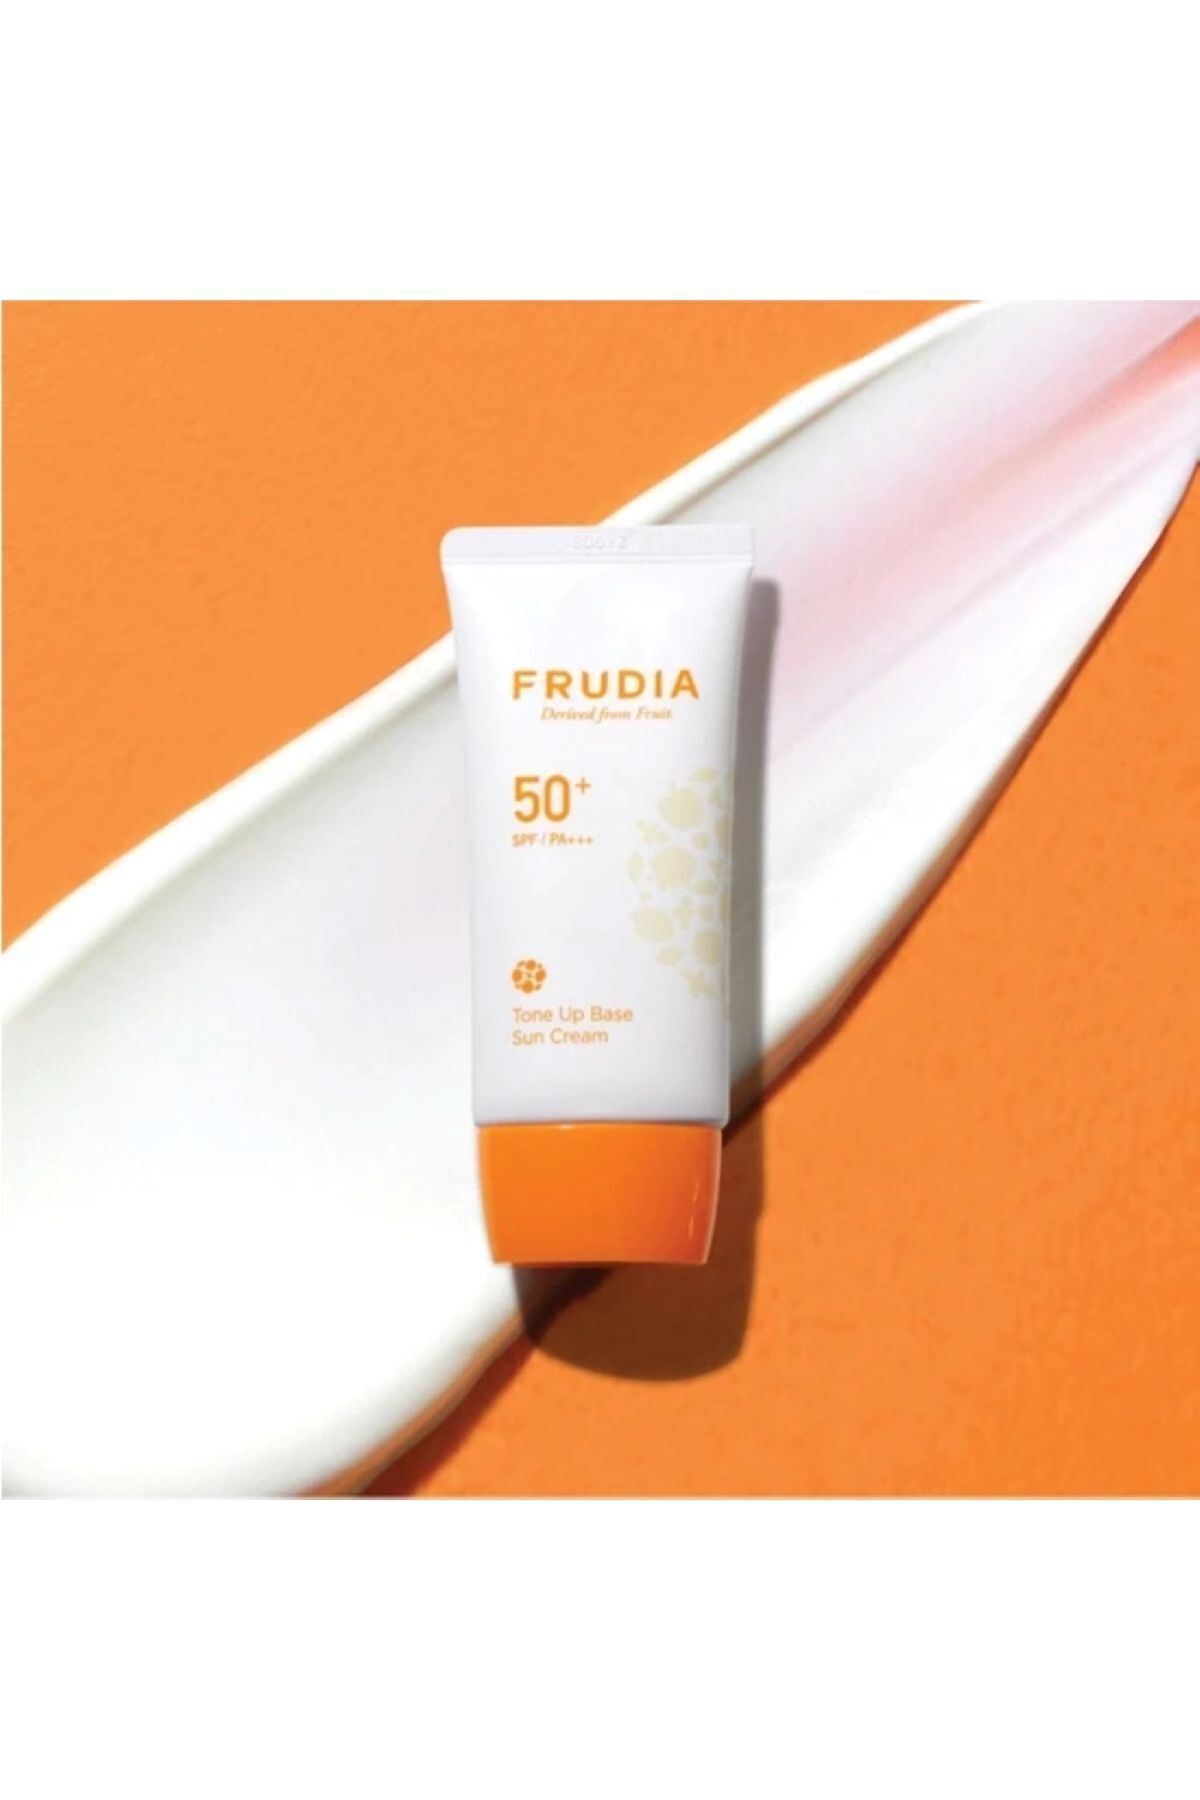 Frudia Tone-Up Base Sun Cream-Temiz İçerikli Aydnlatıcı Güneş Kremi 50 Spf 50G 50 gr CYT796431974319